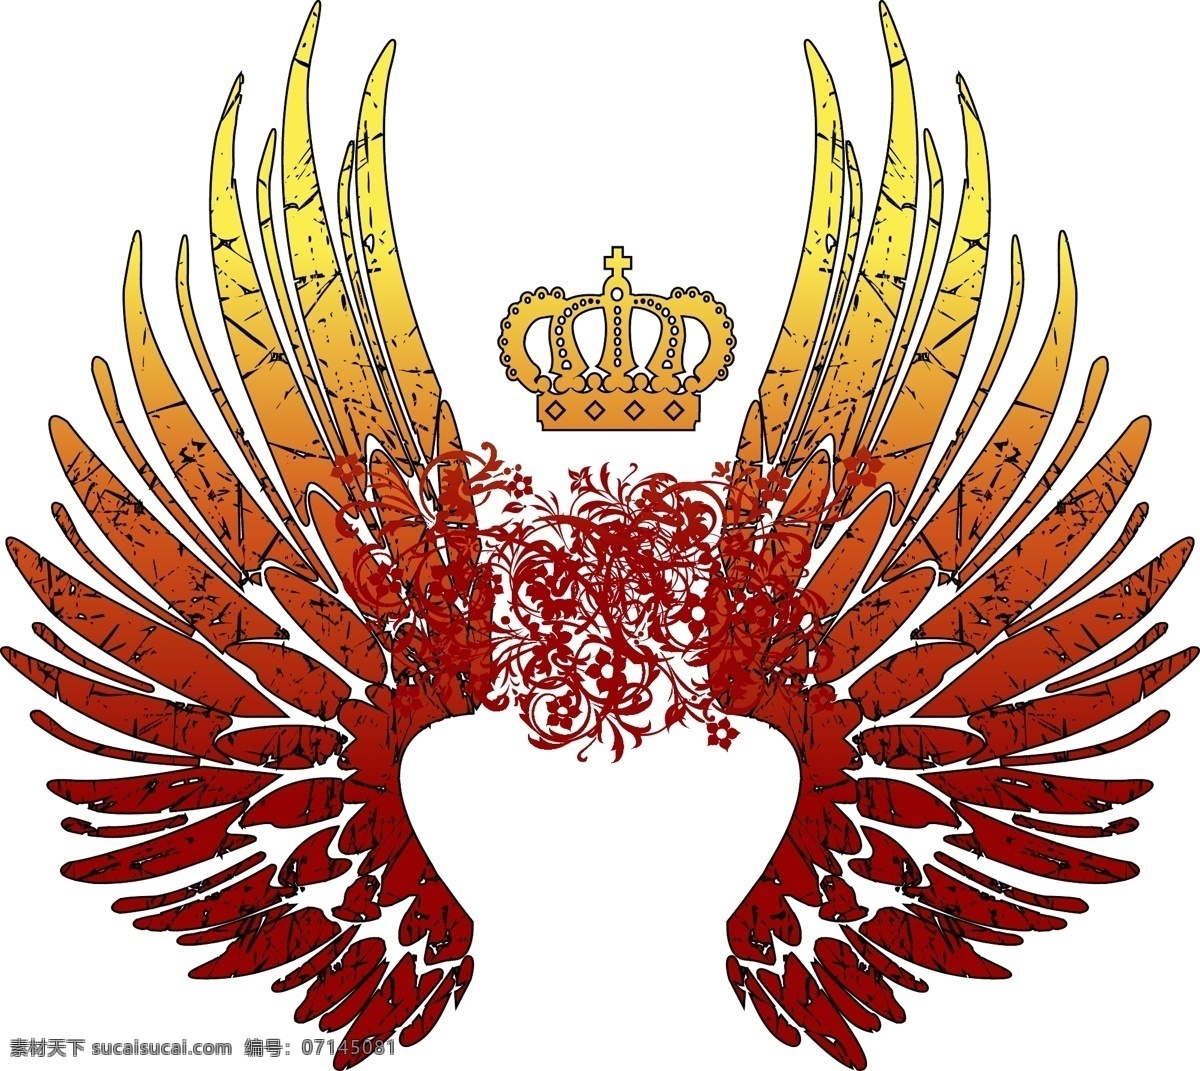 皇冠 翅膀 图腾 花纹 华丽 哥特 红 橙 条纹线条 底纹边框 矢量